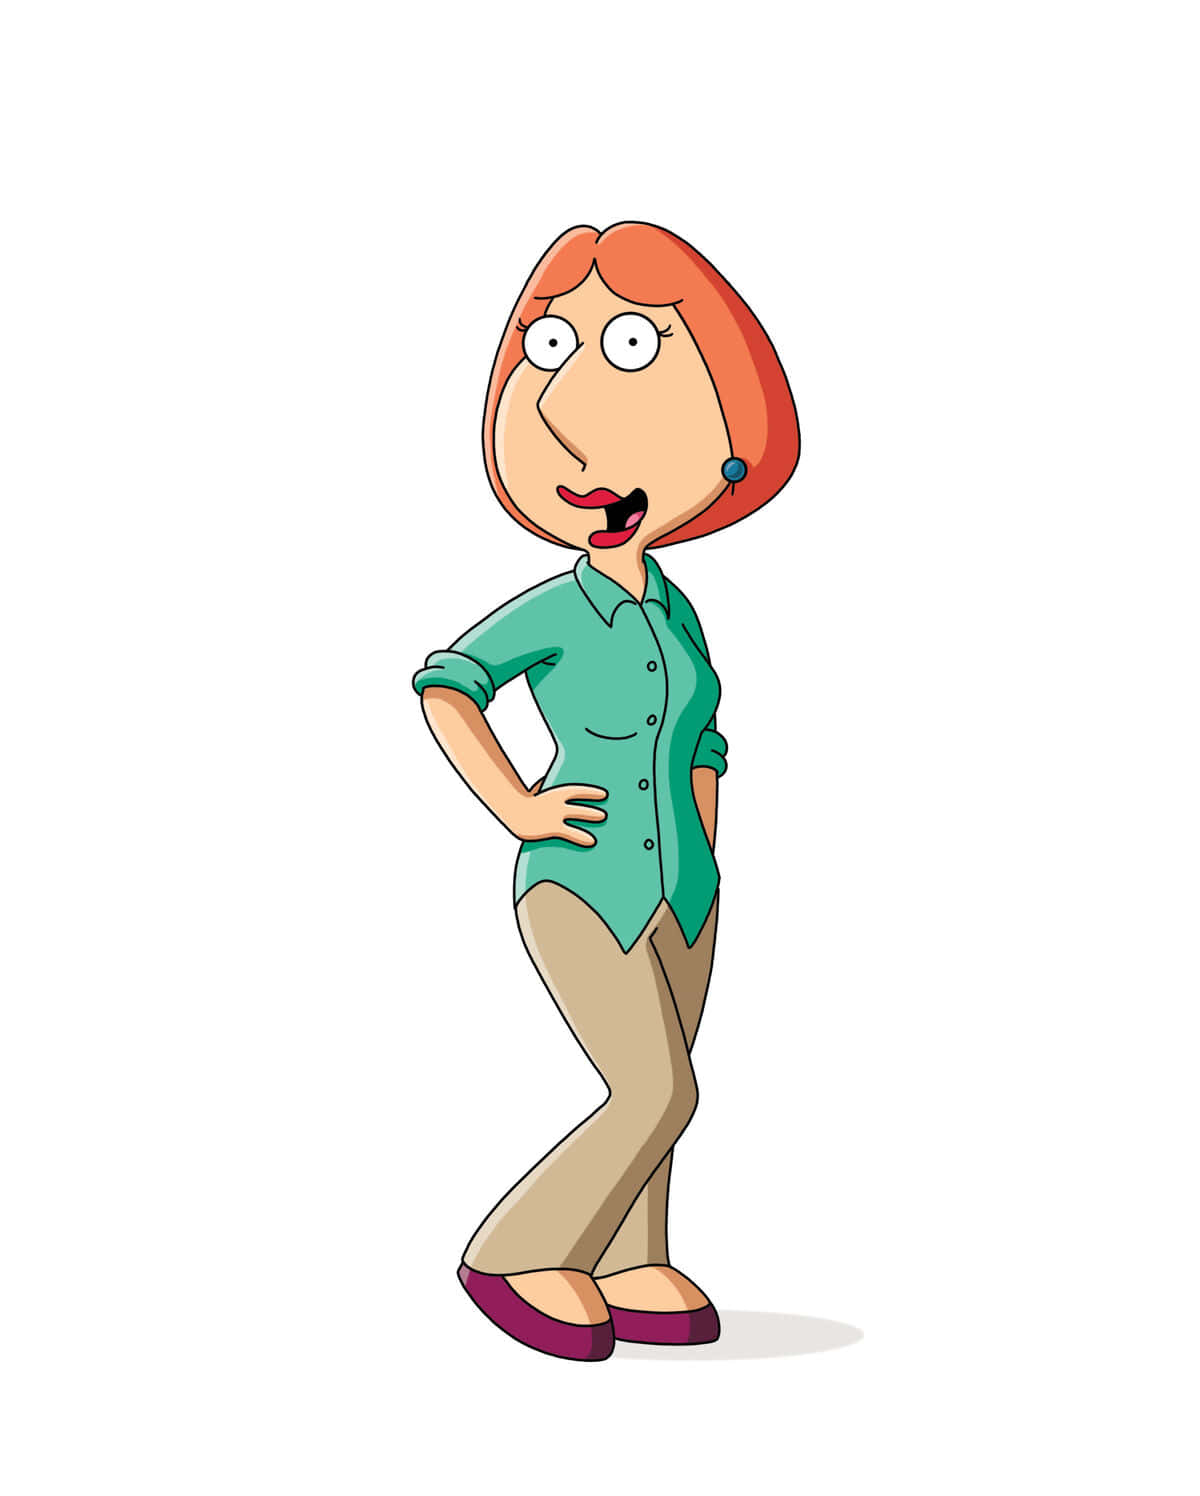 Deltagi Peter Griffin Og Resten Af Family Guy-banden For Uafbrudt Underholdning!